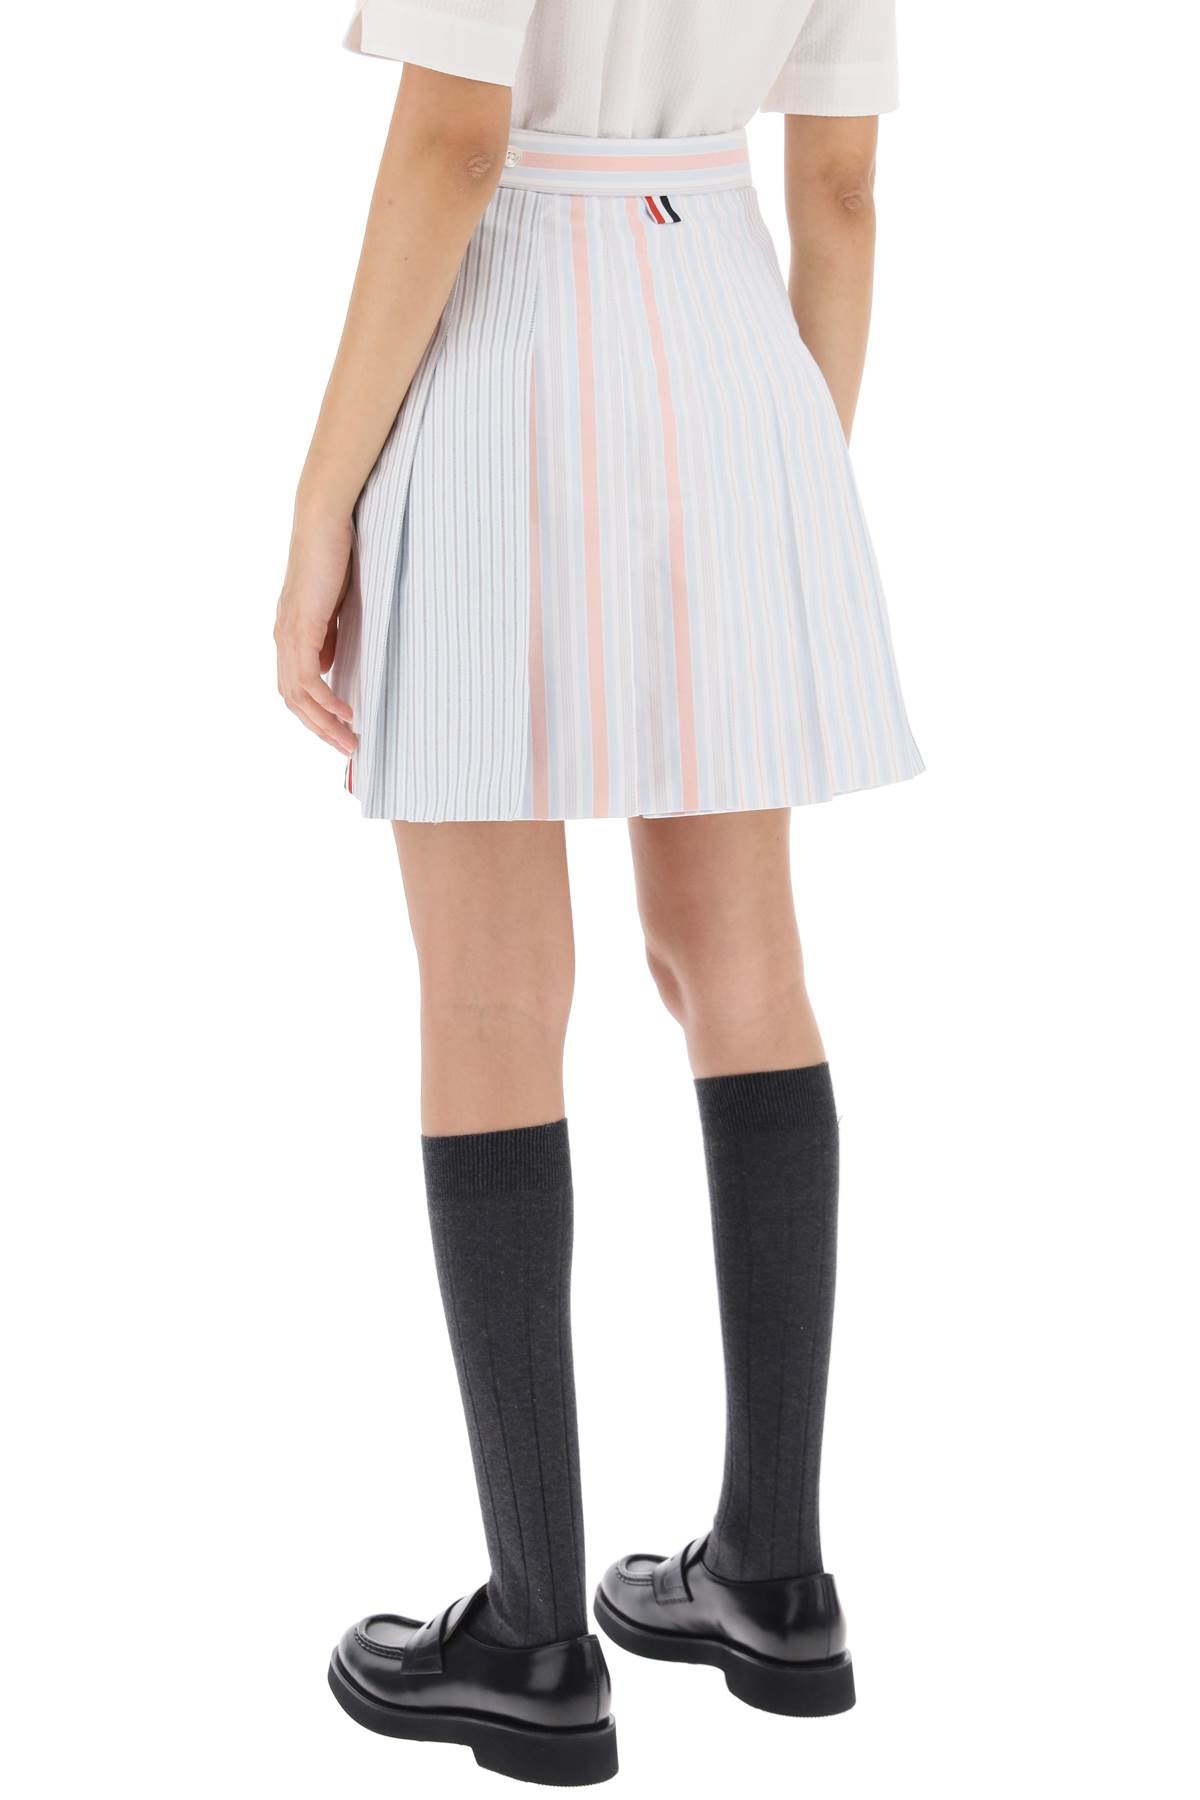 Thom browne funmix striped oxford mini skirt-2